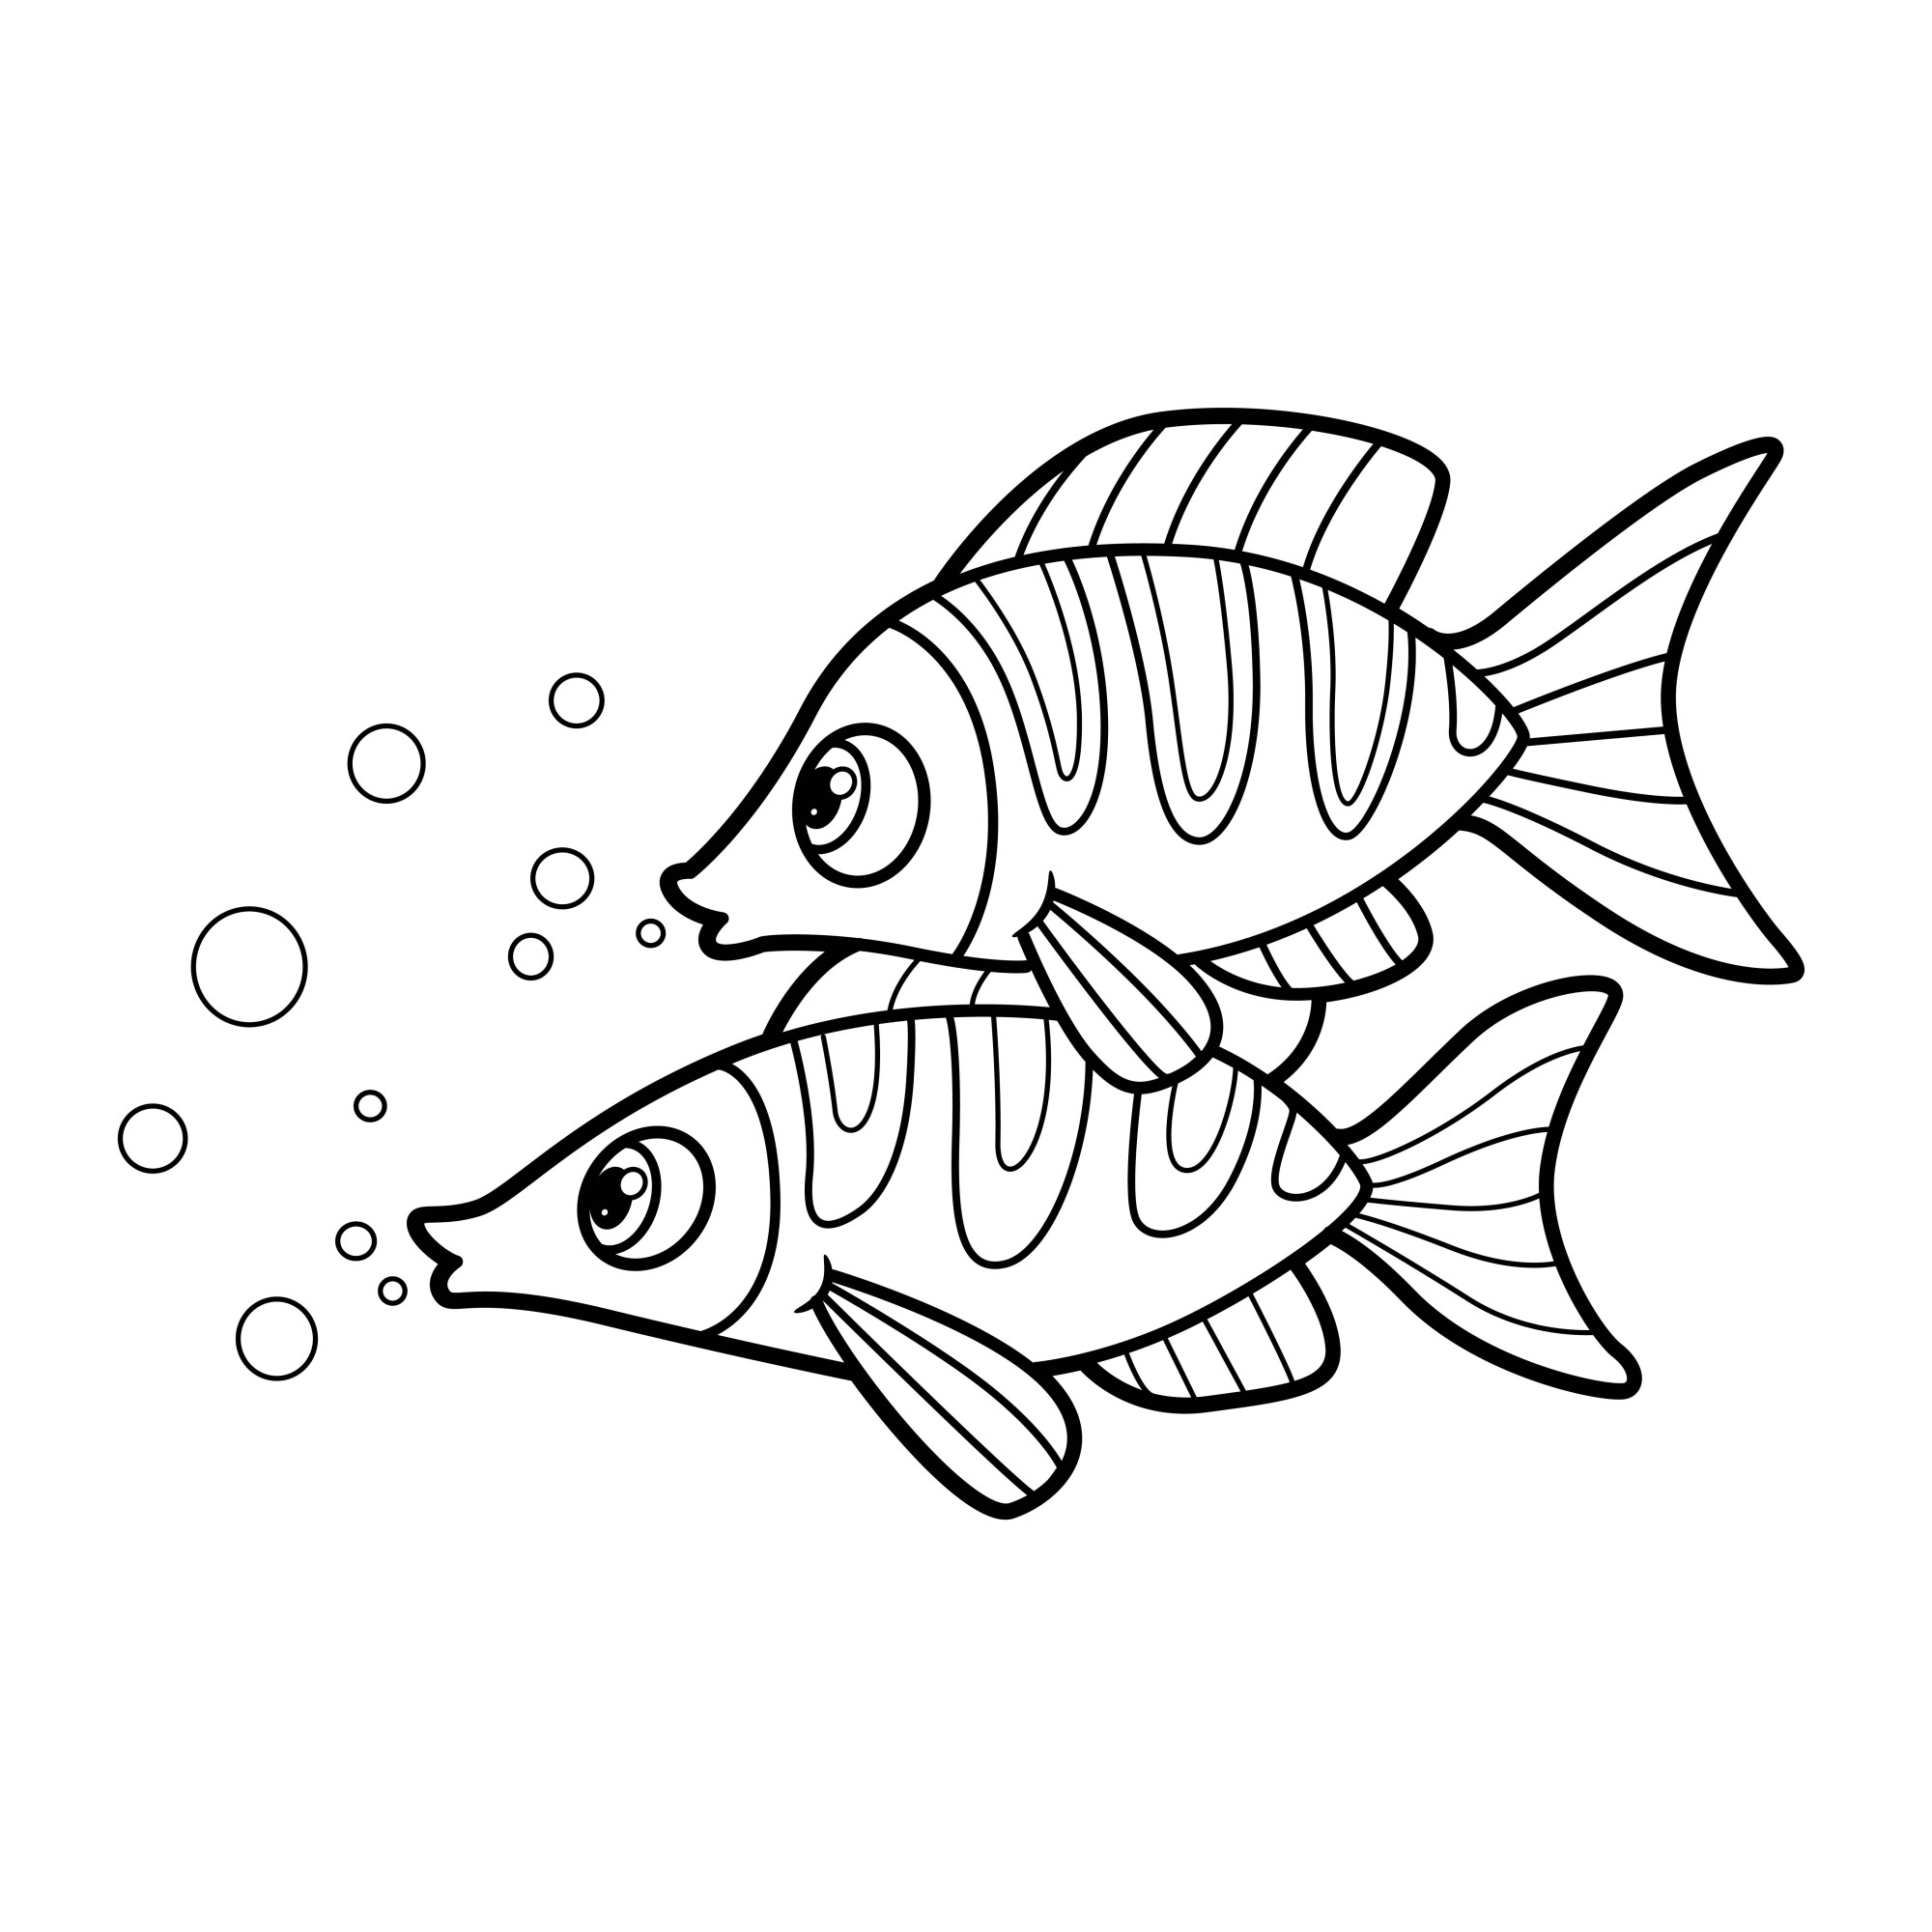 Раскраска для детей: две пестрые морские рыбки